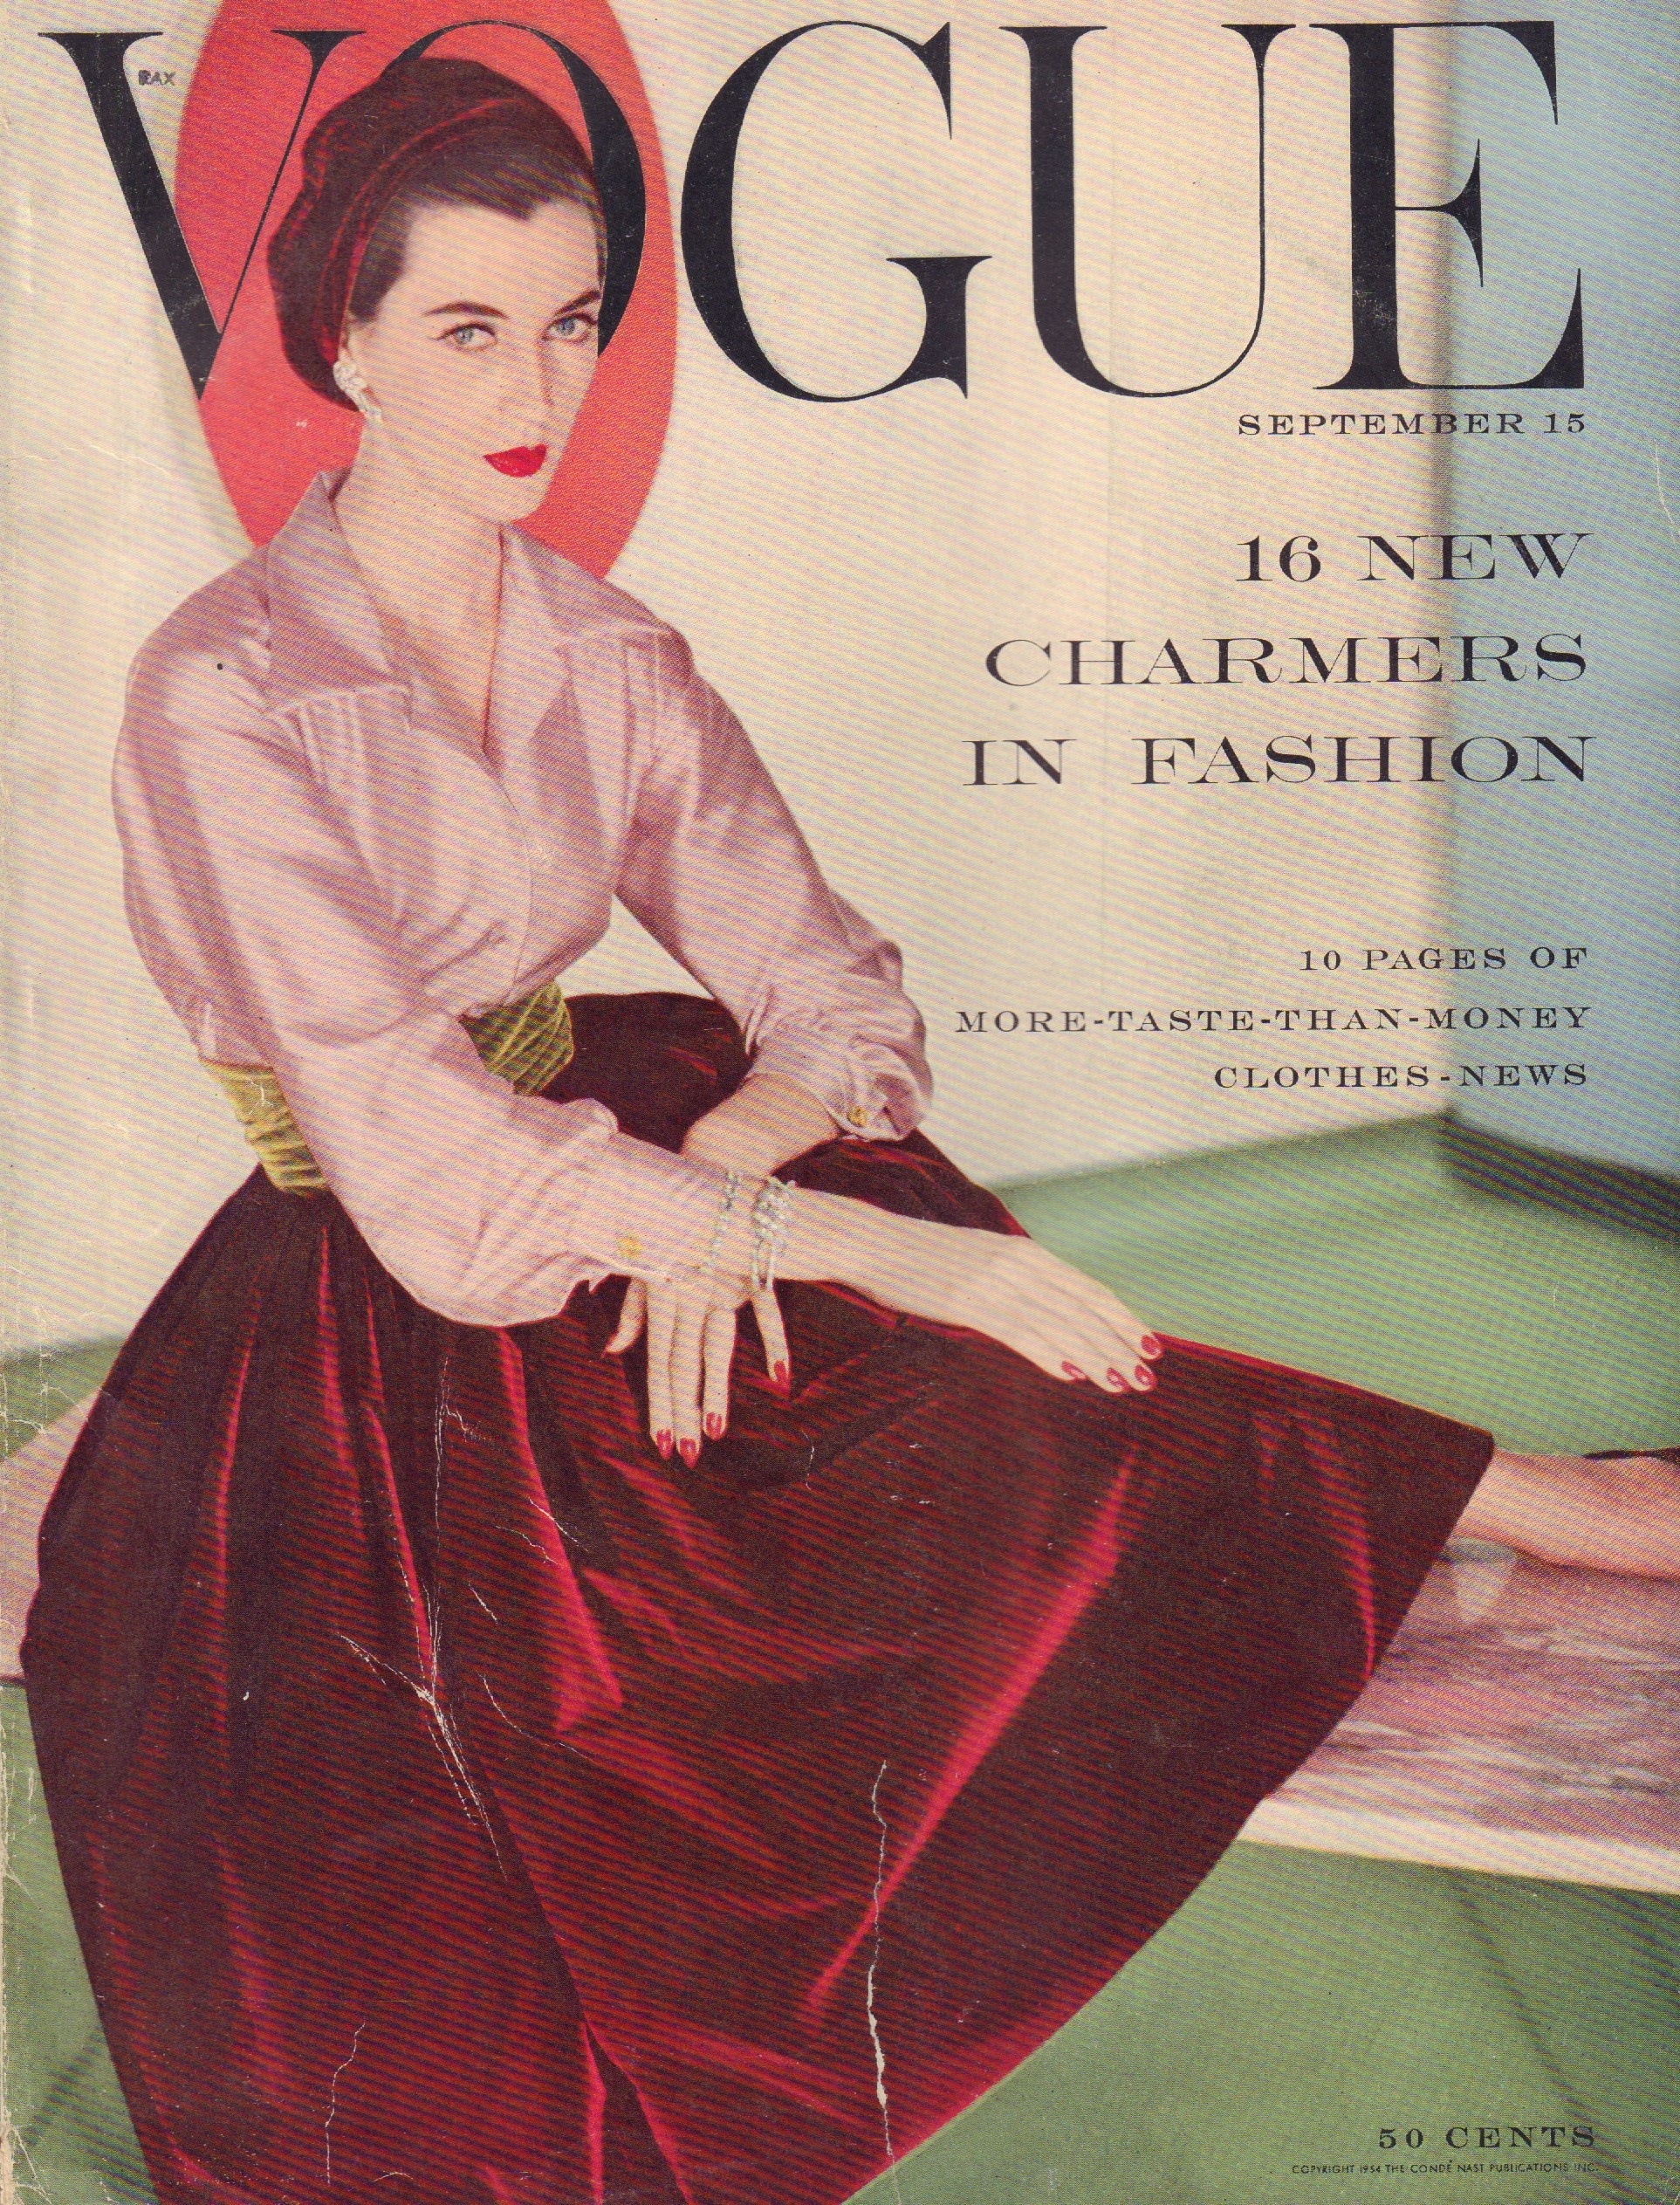 Vogue Magazine. September 15, 1954